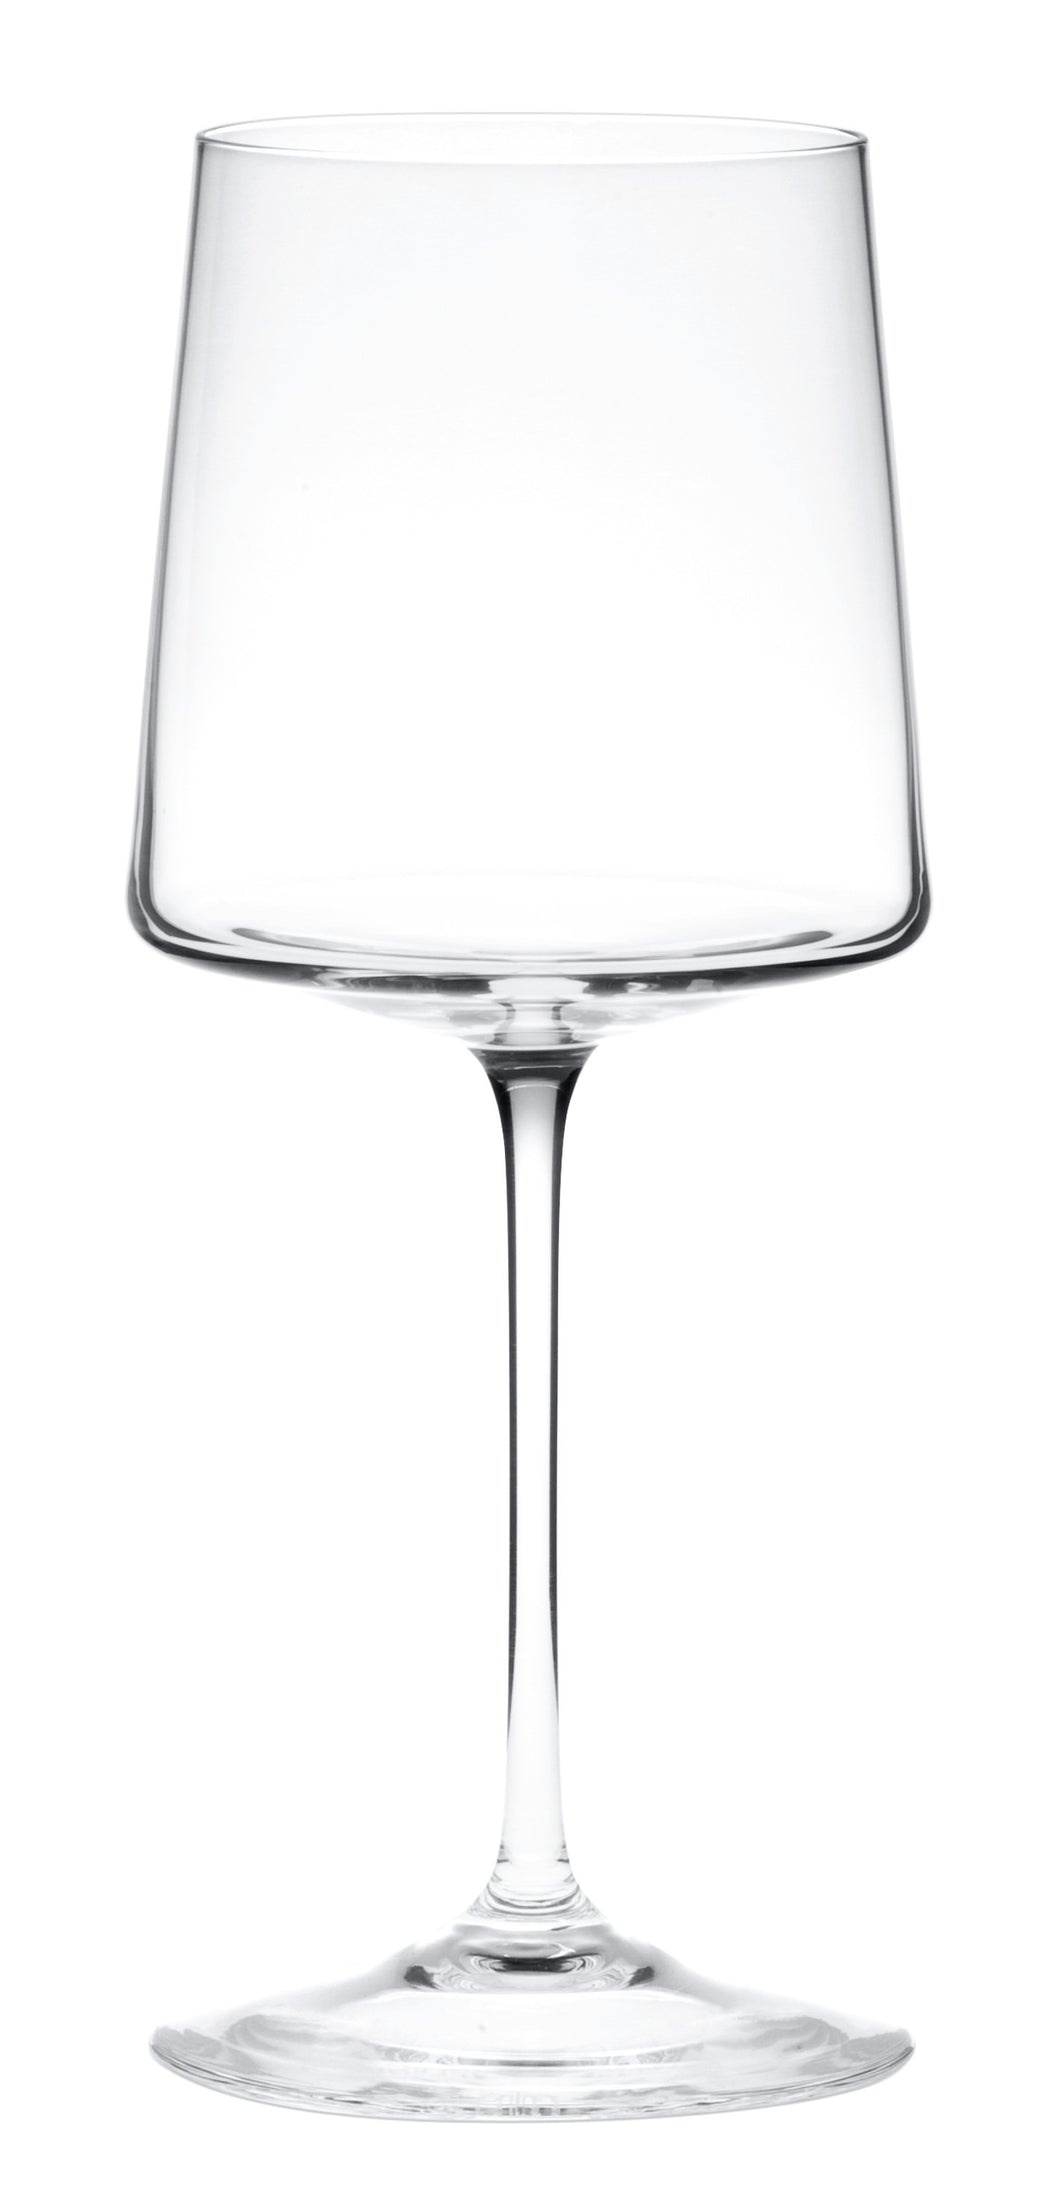 HEIGHTS klar, geschlossen glatt - Rotweinglas 215 mm